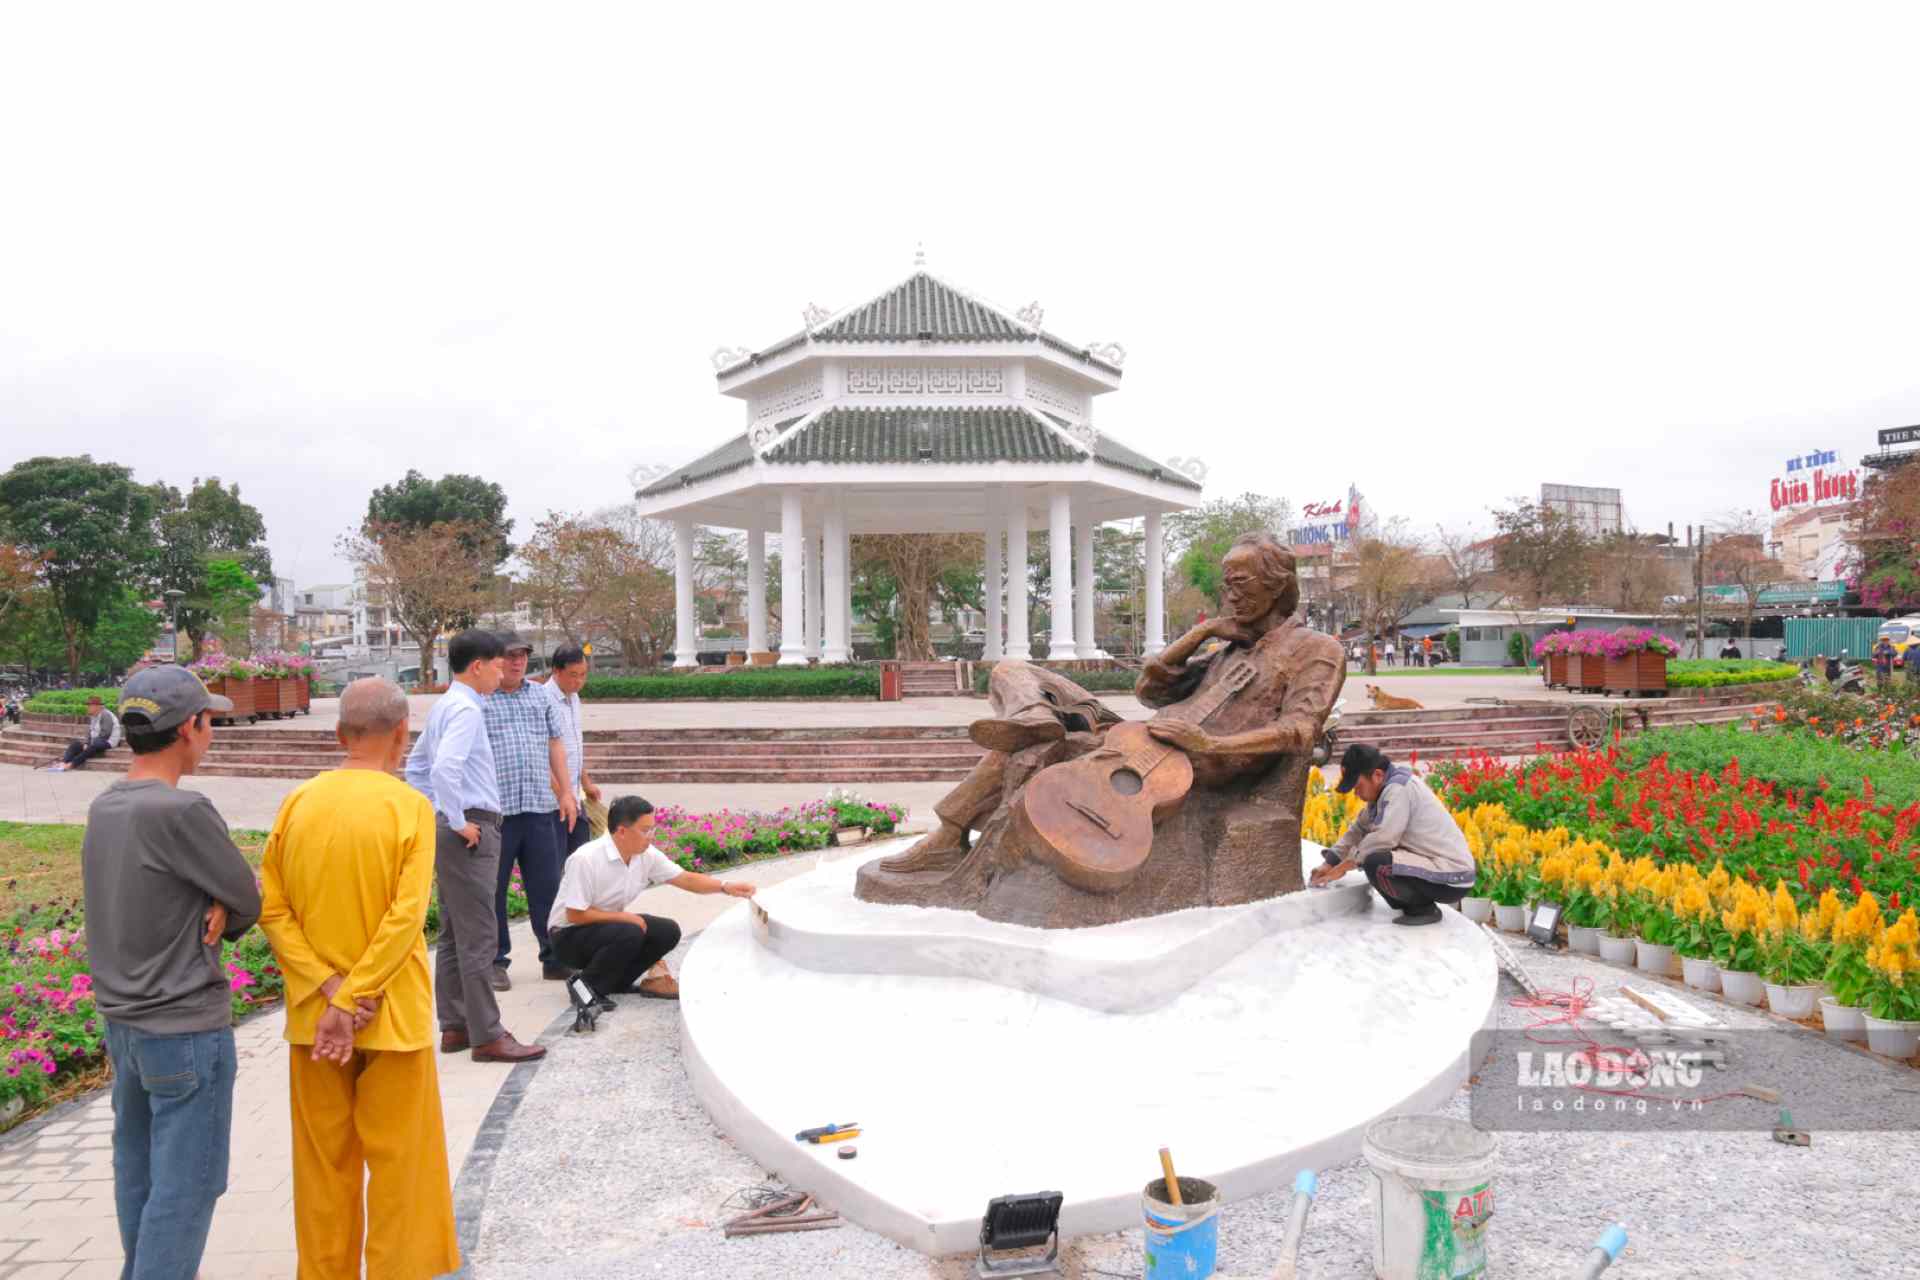 Ghi nhận của Lao Động, bức tượng đồng cân nặng gần nửa tấn của cố nhạc sĩ Trịnh Công Sơn đã được đặt trưng bày tại không gian công viên trên đường Trịnh Công Sơn (phường Gia Hội, TP. Huế) sau một thời gian chờ đợi. 